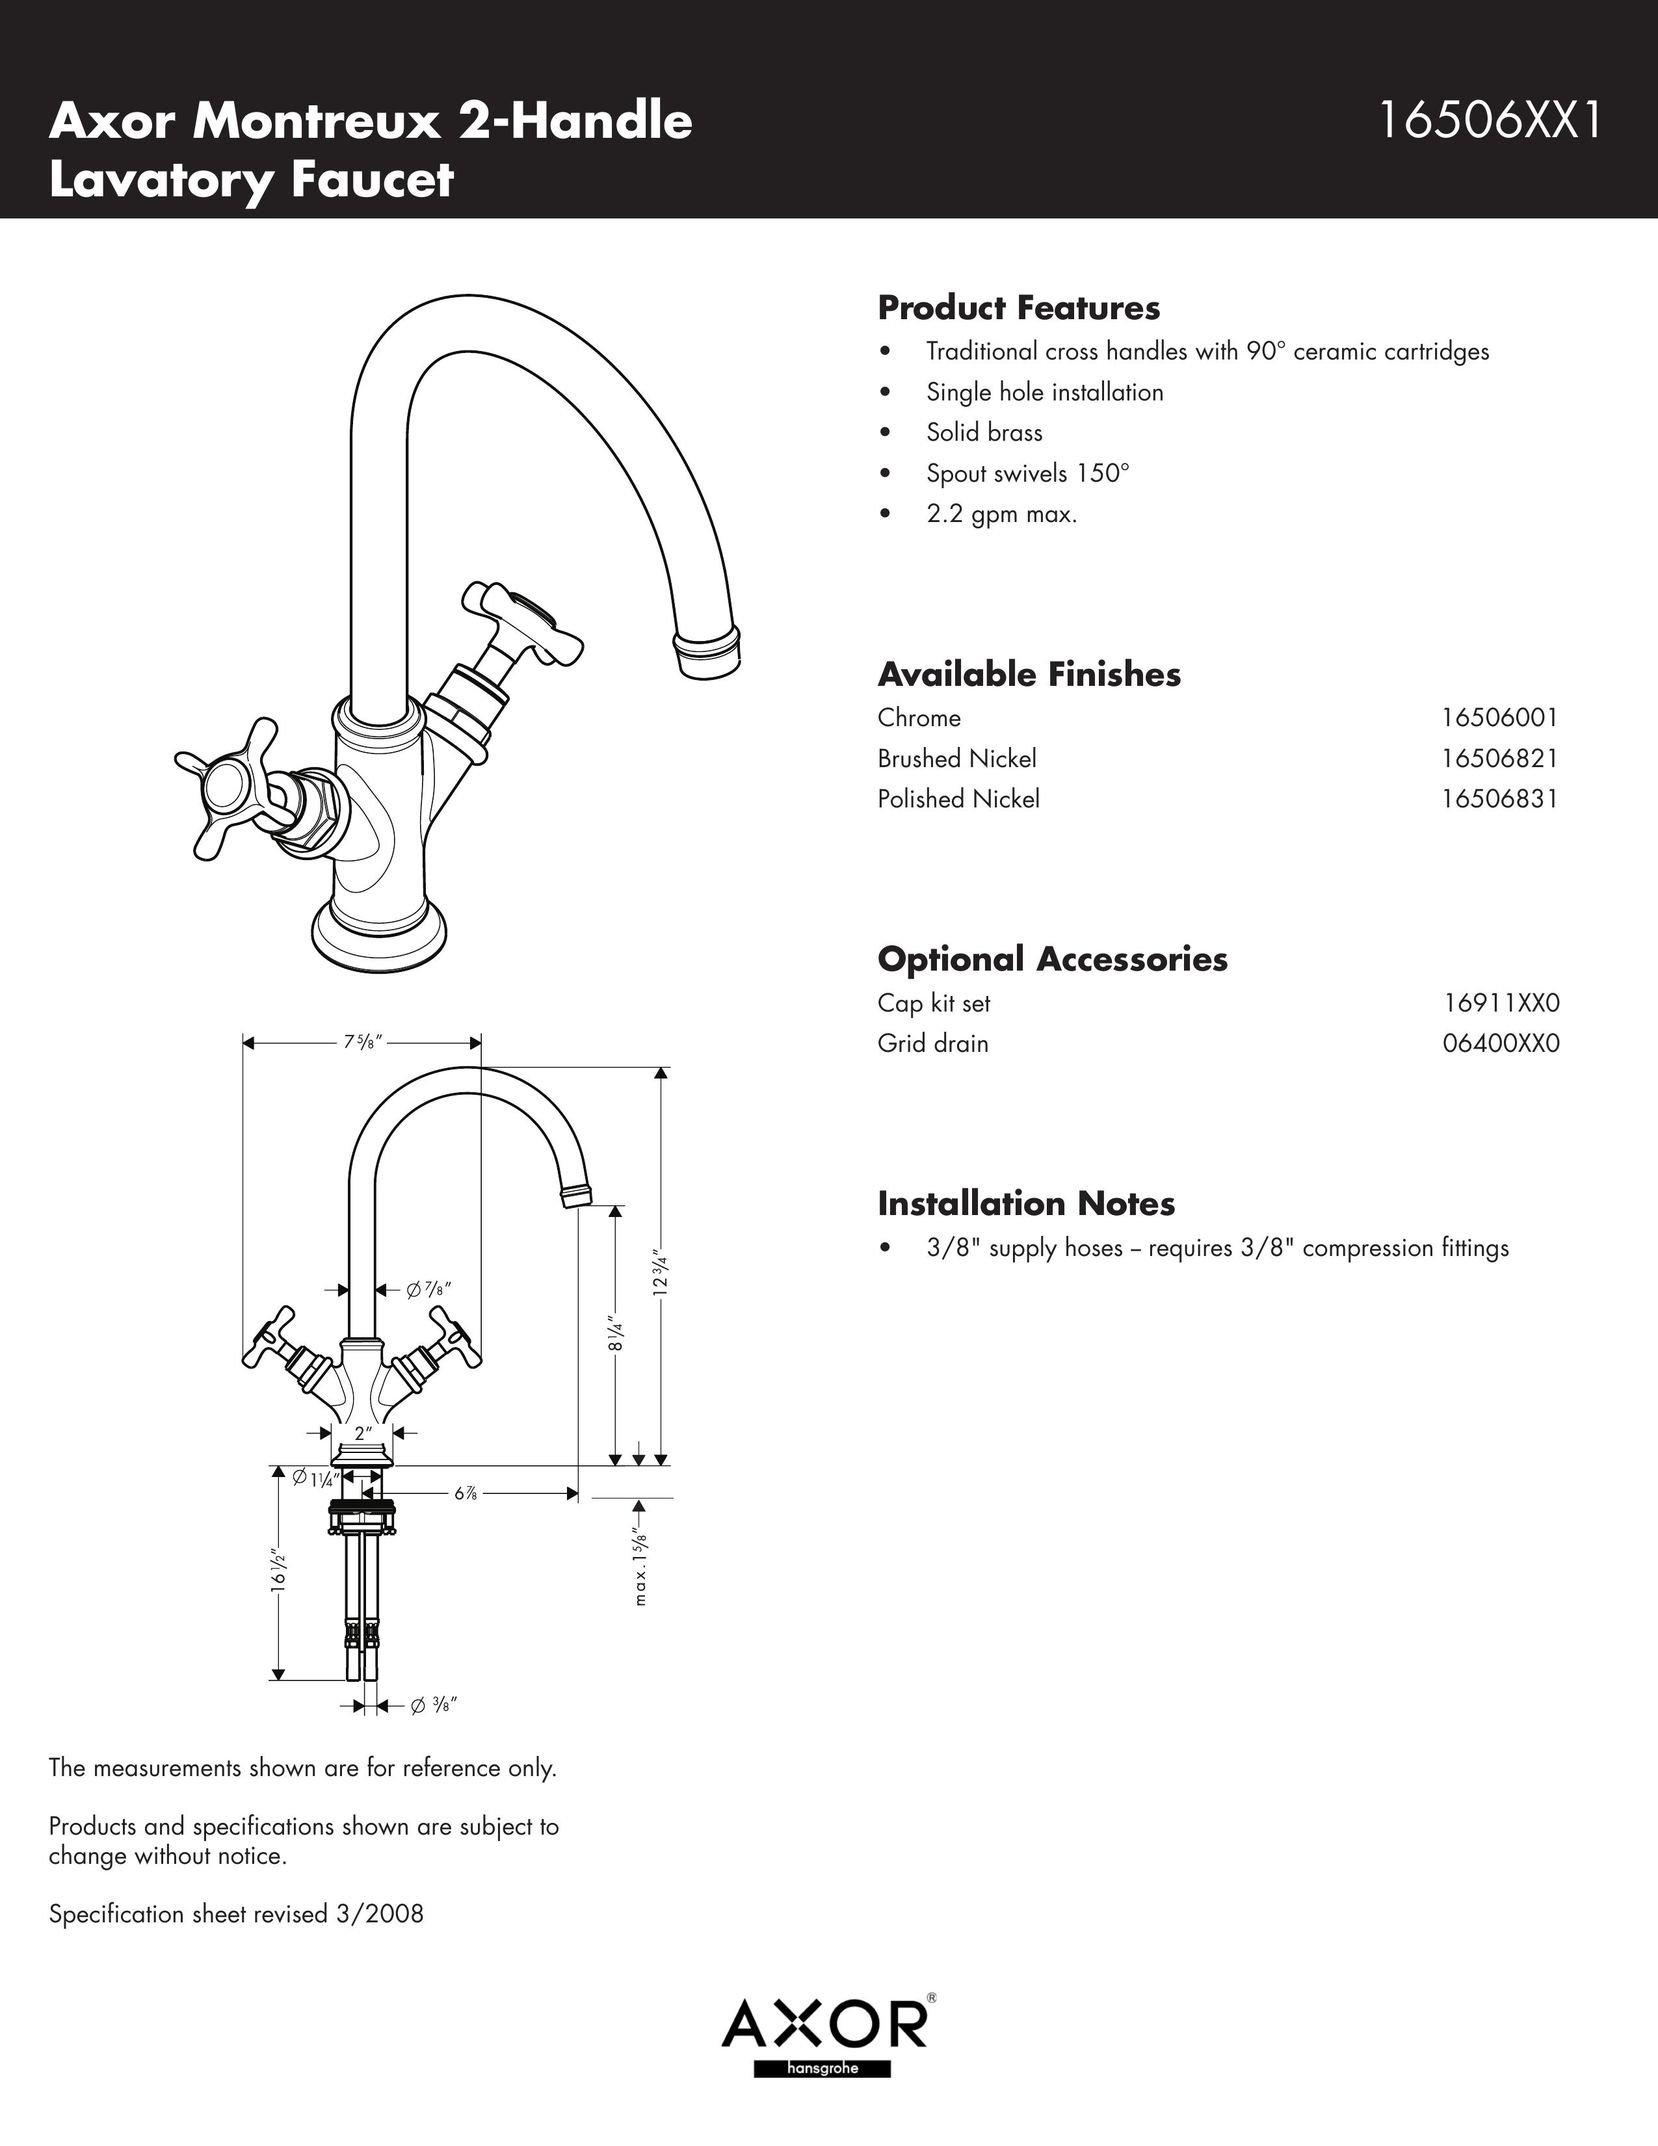 Axor 16506821 Indoor Furnishings User Manual